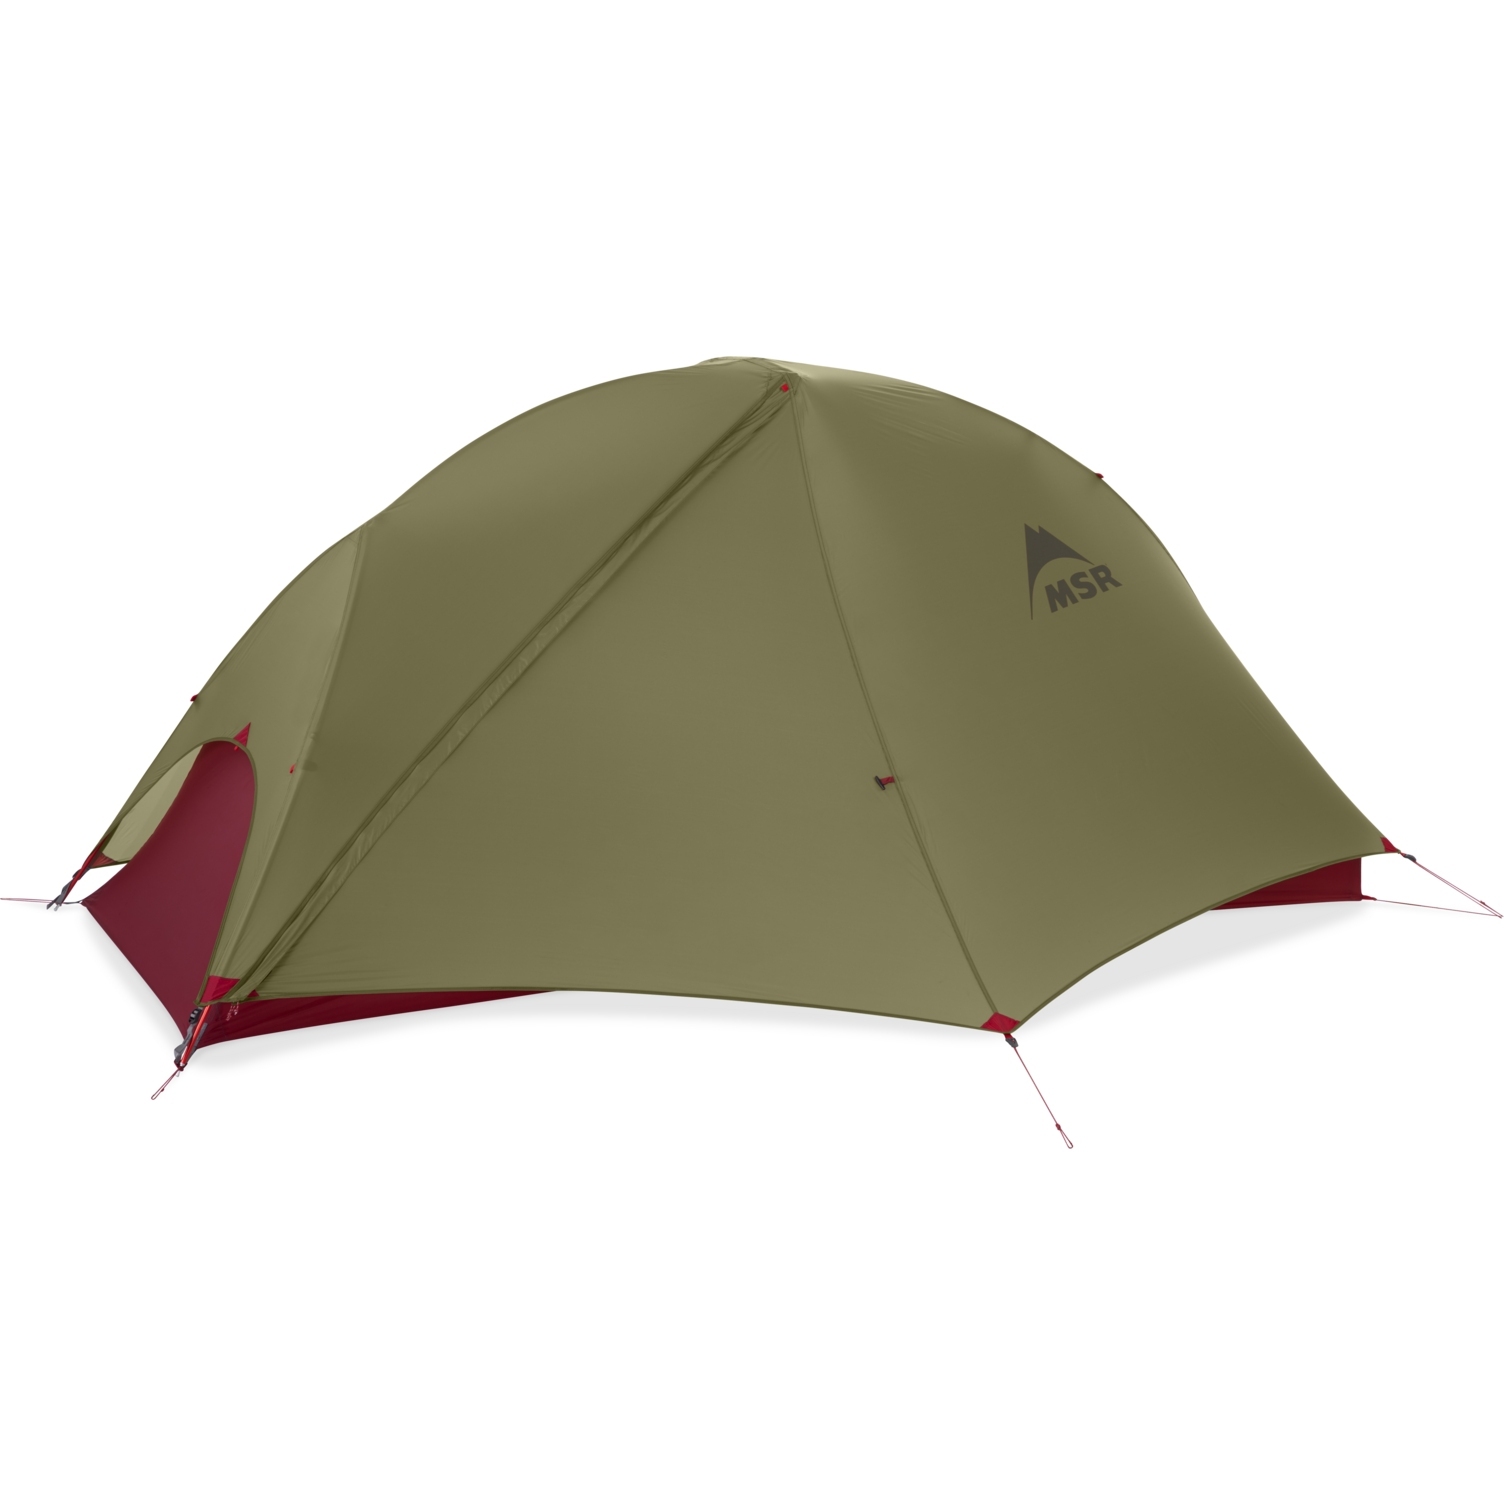 Productfoto van MSR FreeLite 1 Tent - groen